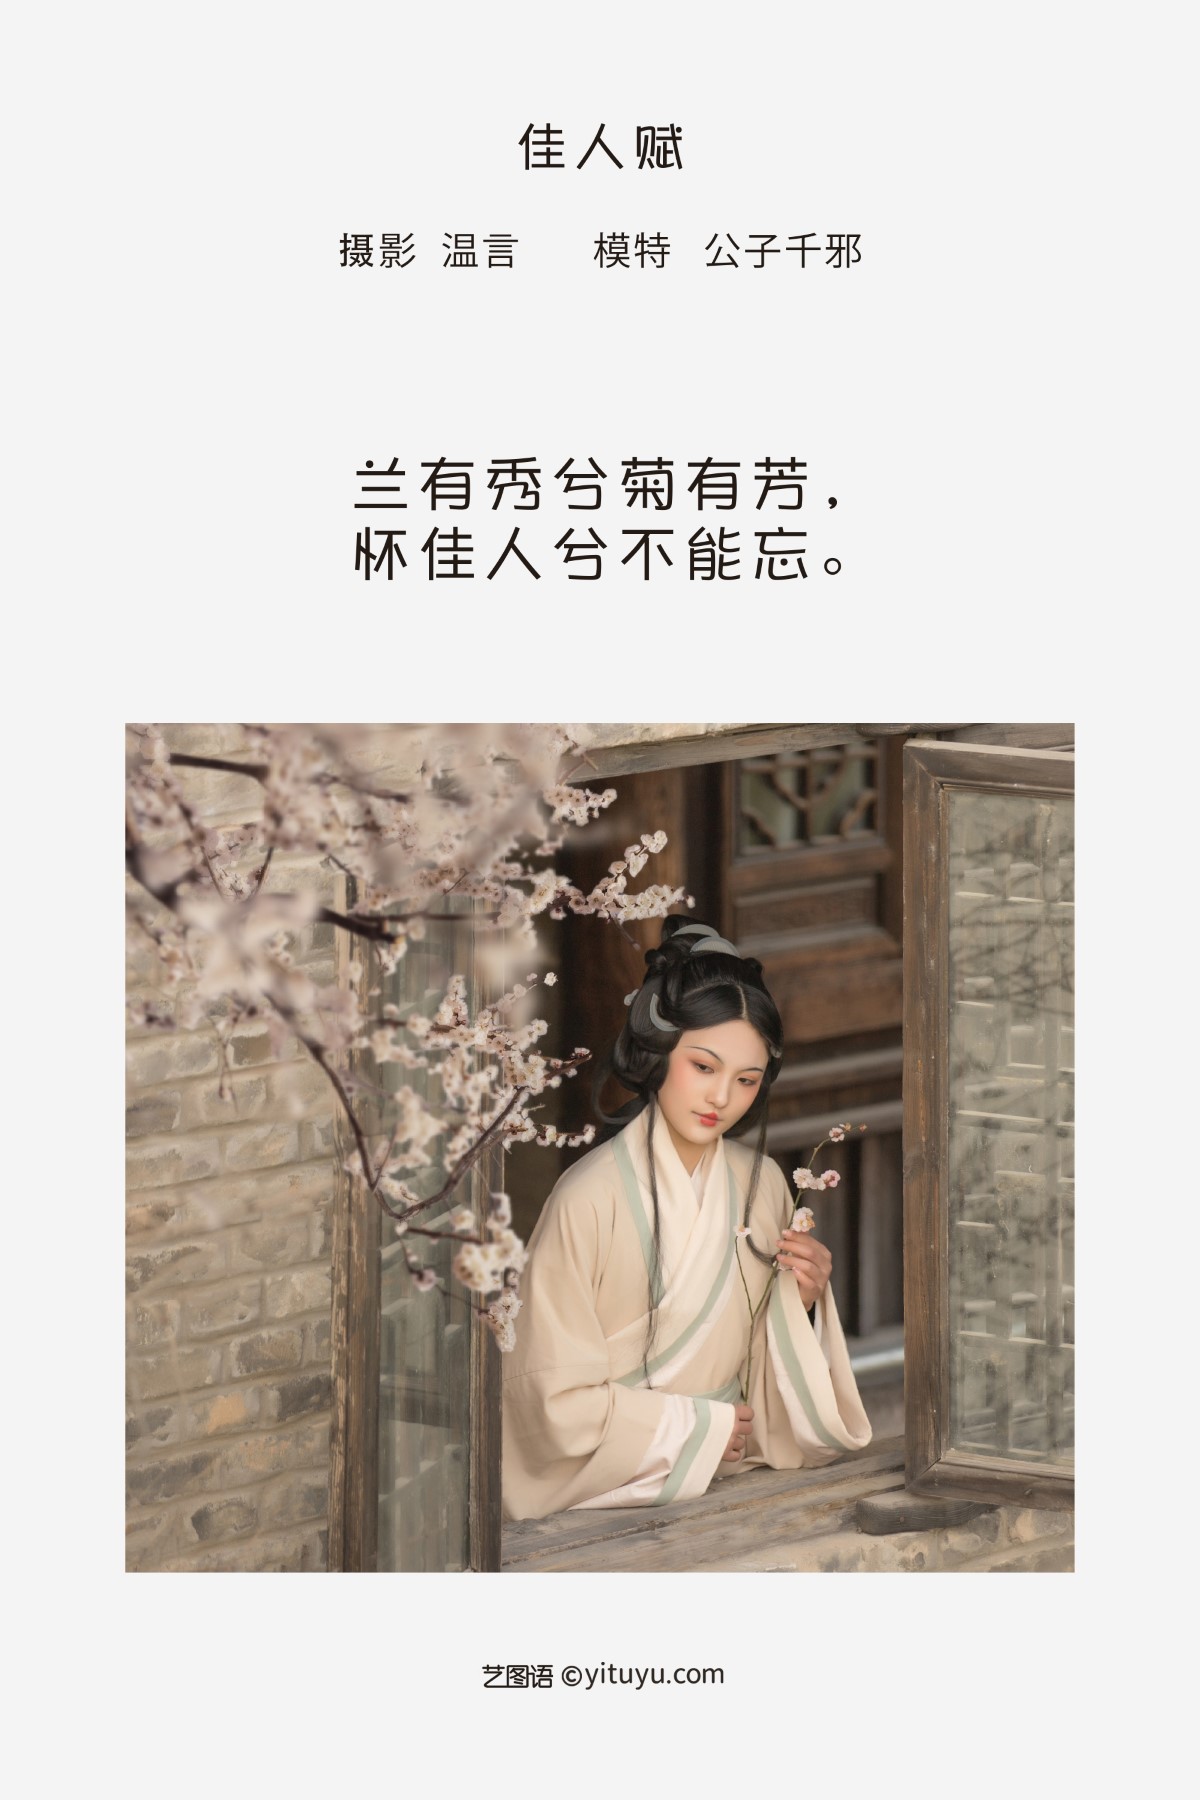 YiTuYu艺图语 Vol 1332 Gong Zi Qian Xie 0002 2568142910.jpg